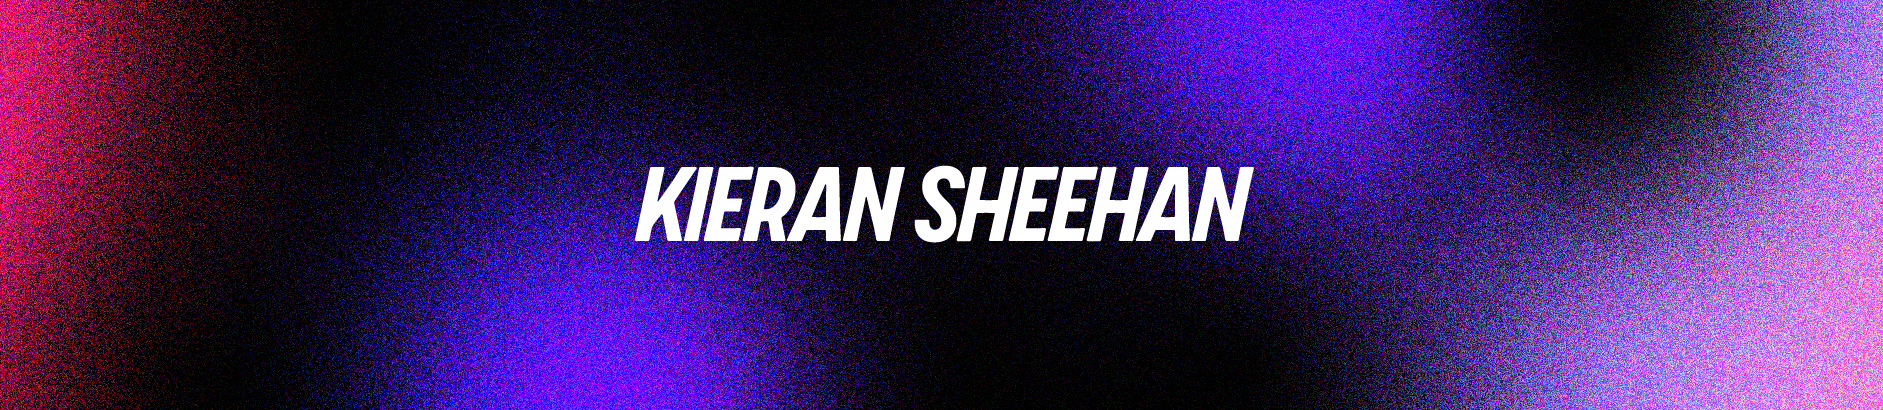 Kieran Sheehan's profile banner